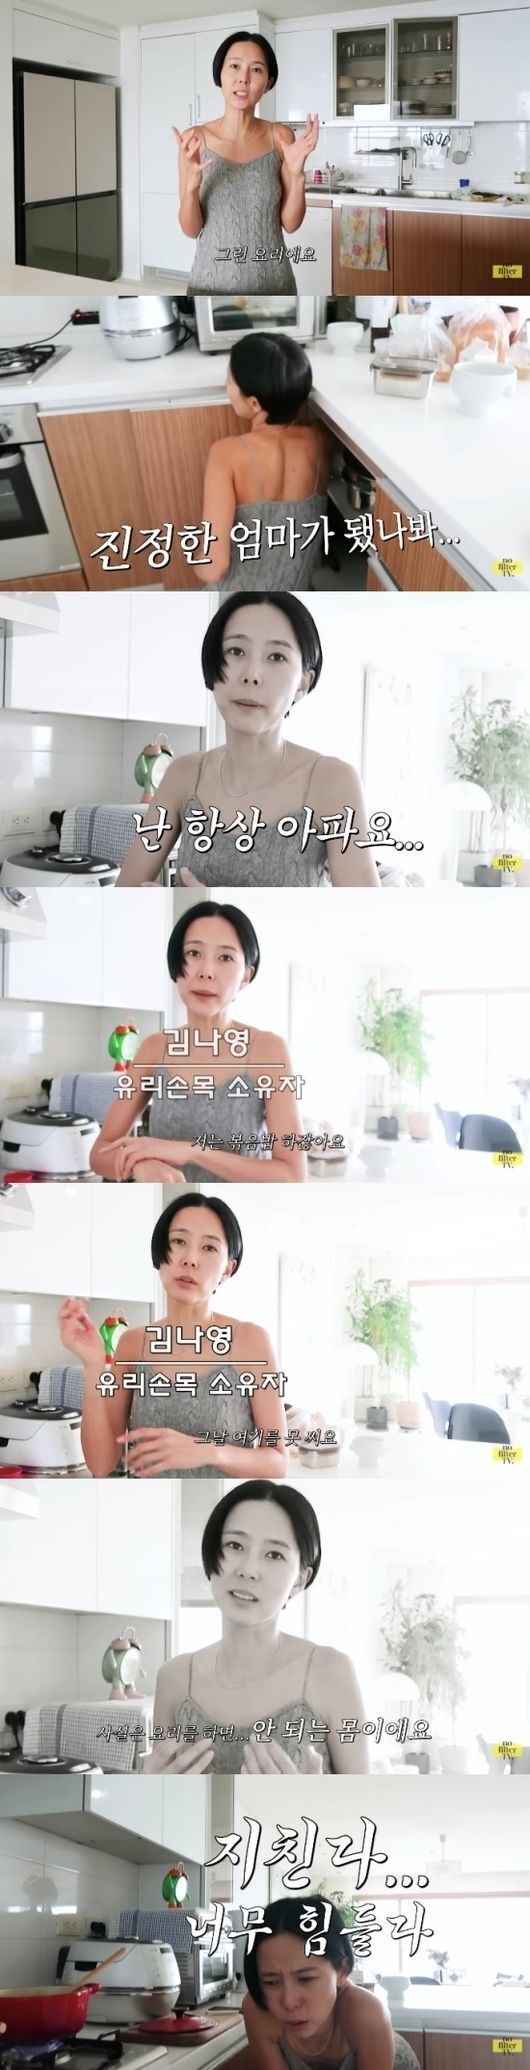 ‘노필터TV’ 김나영